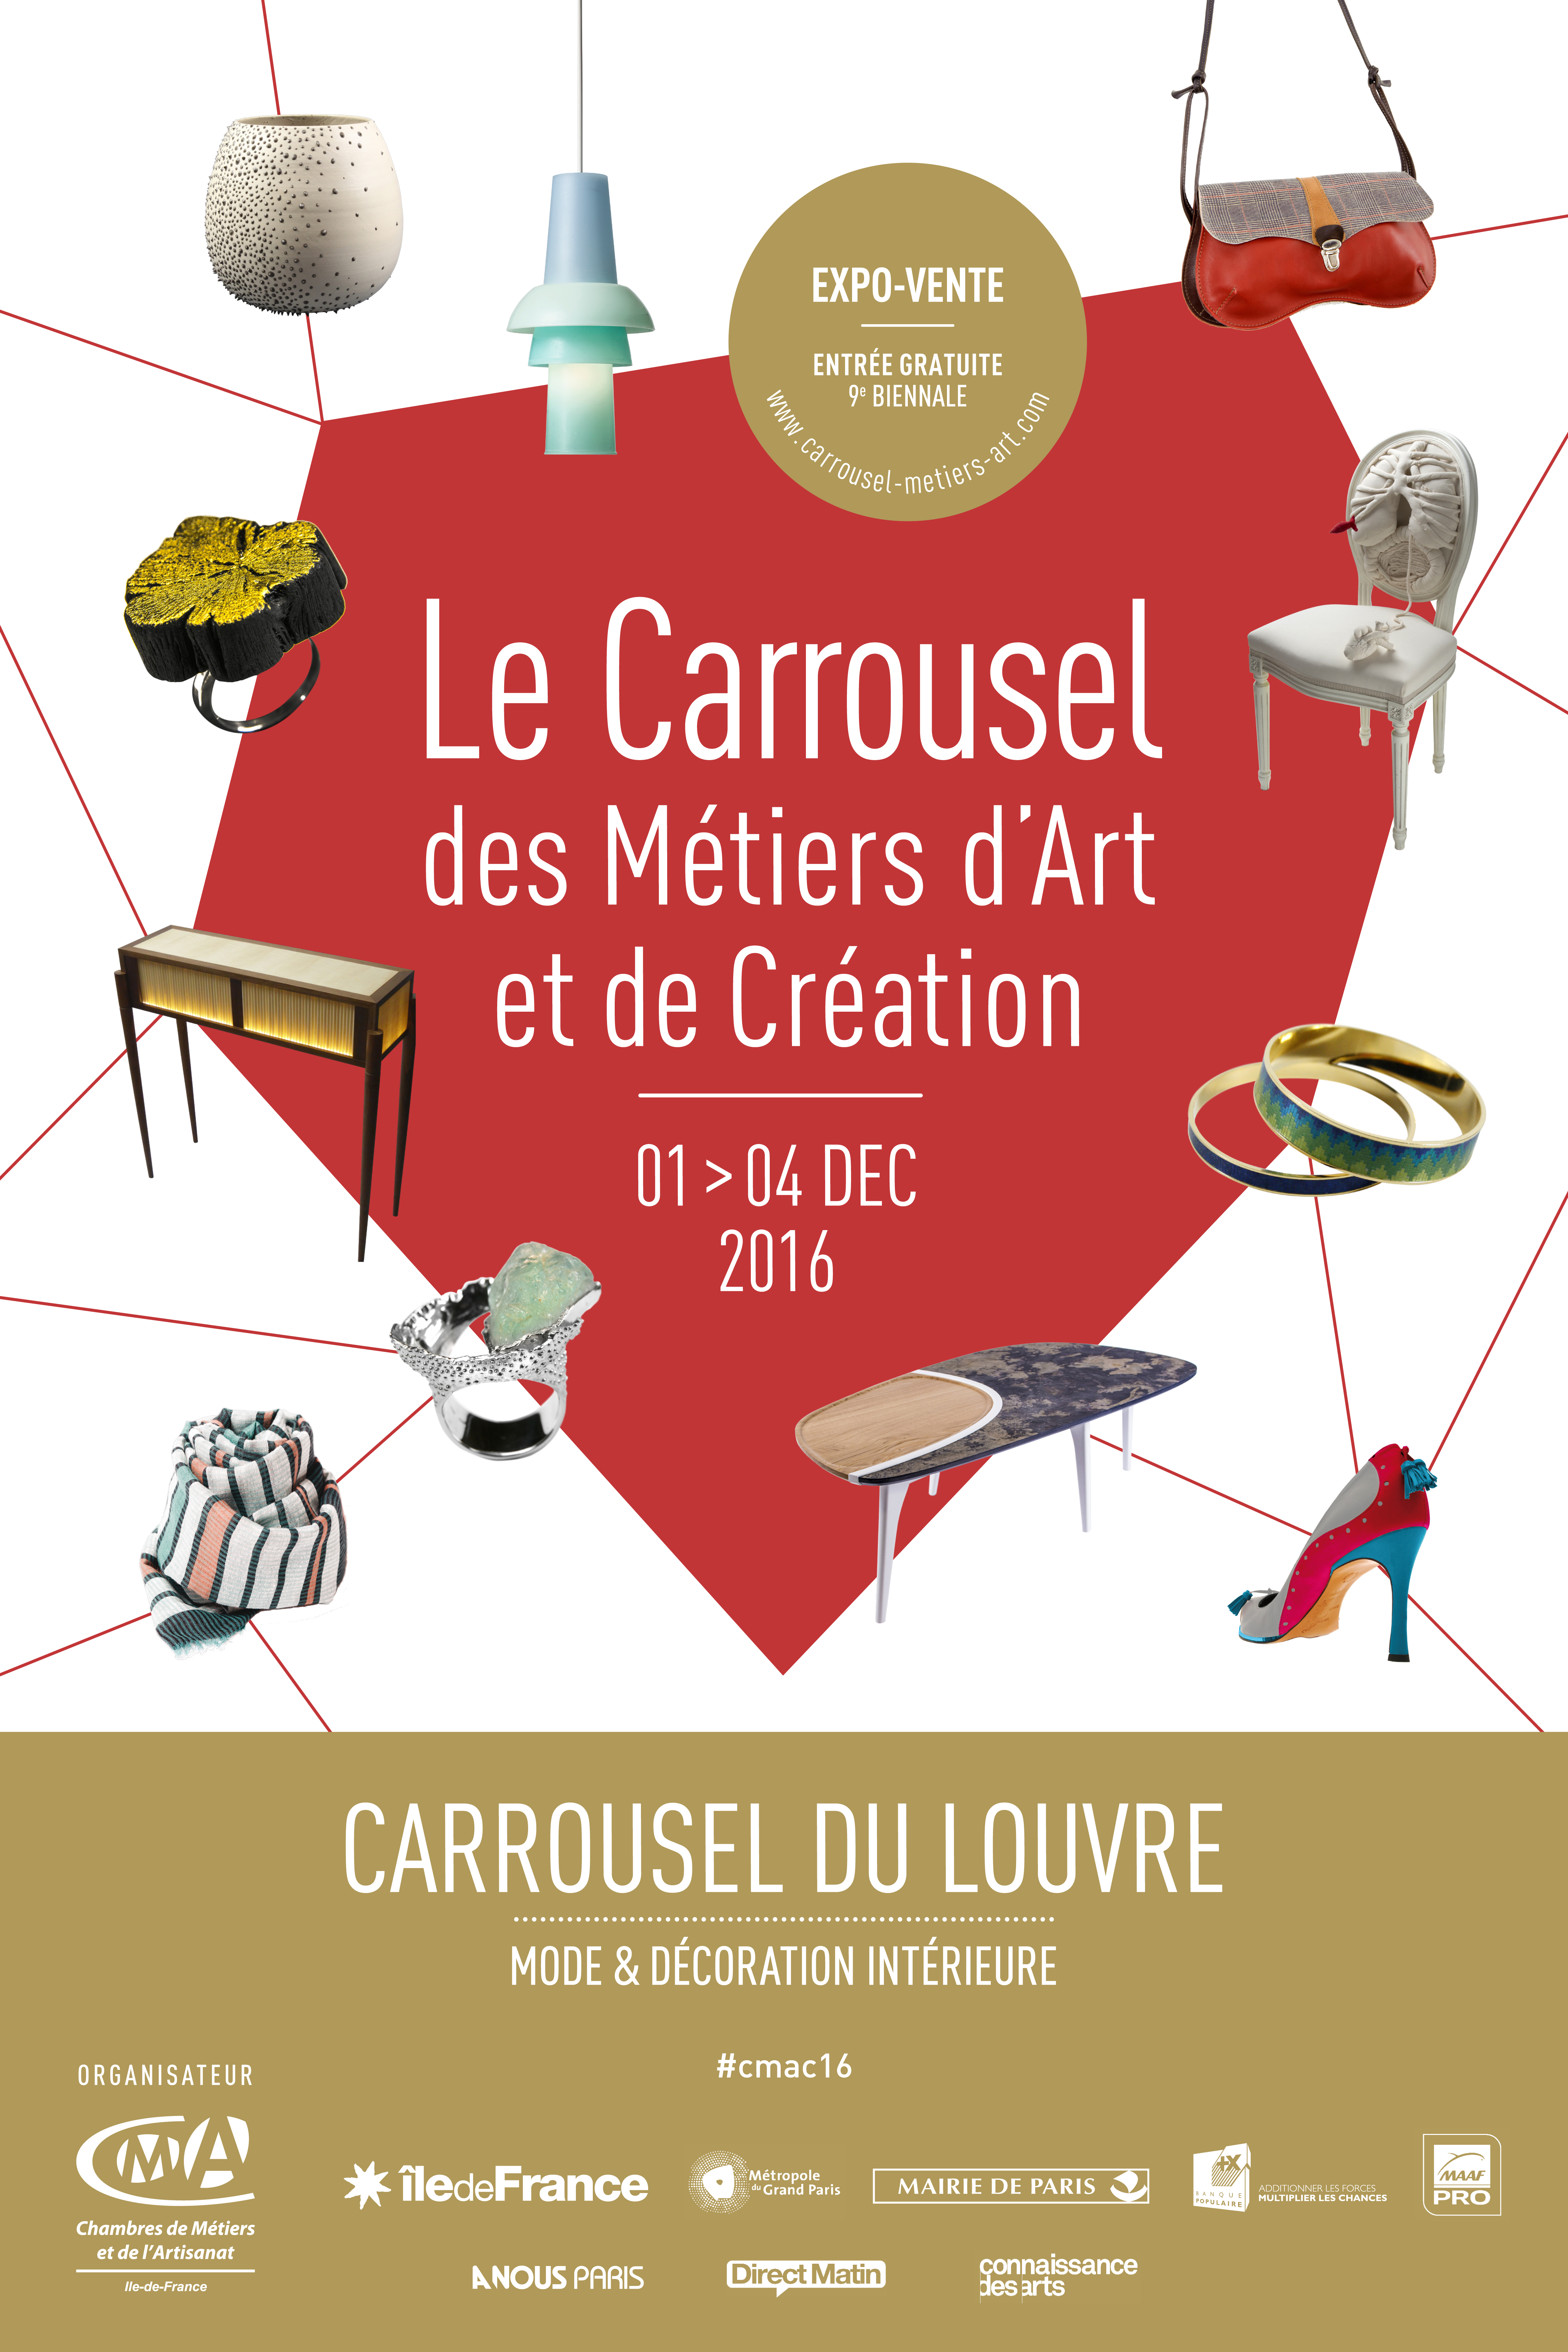 Carrousel des Métiers d’Art et de la Création – 2016 Exhibition